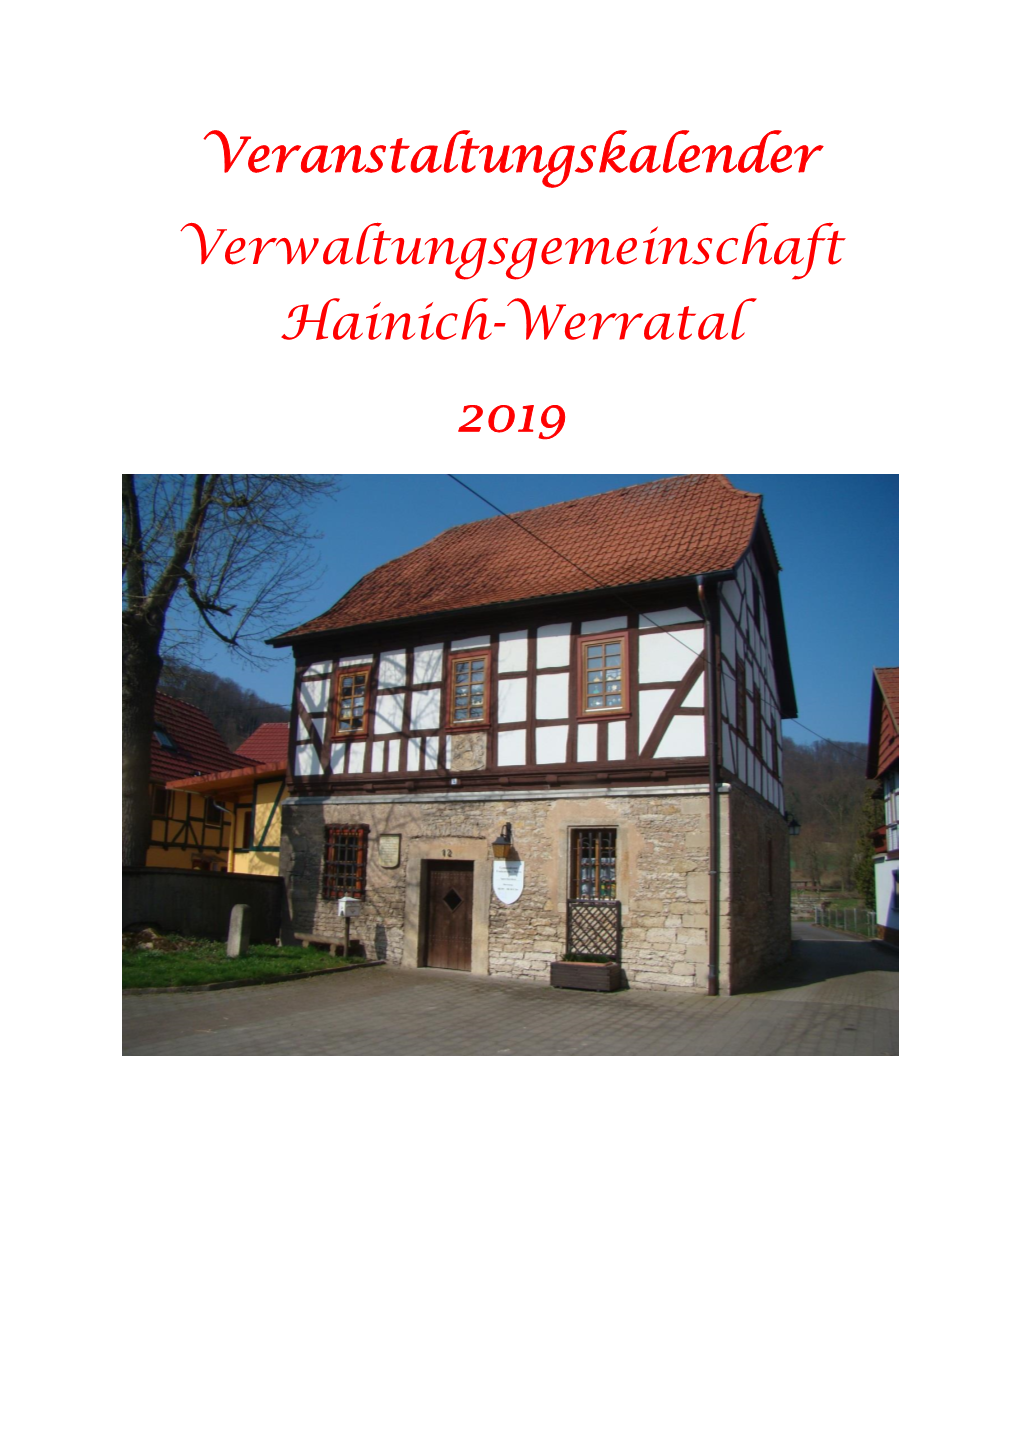 Veranstaltungskalender Verwaltungsgemeinschaft Hainich-Werratal 2019